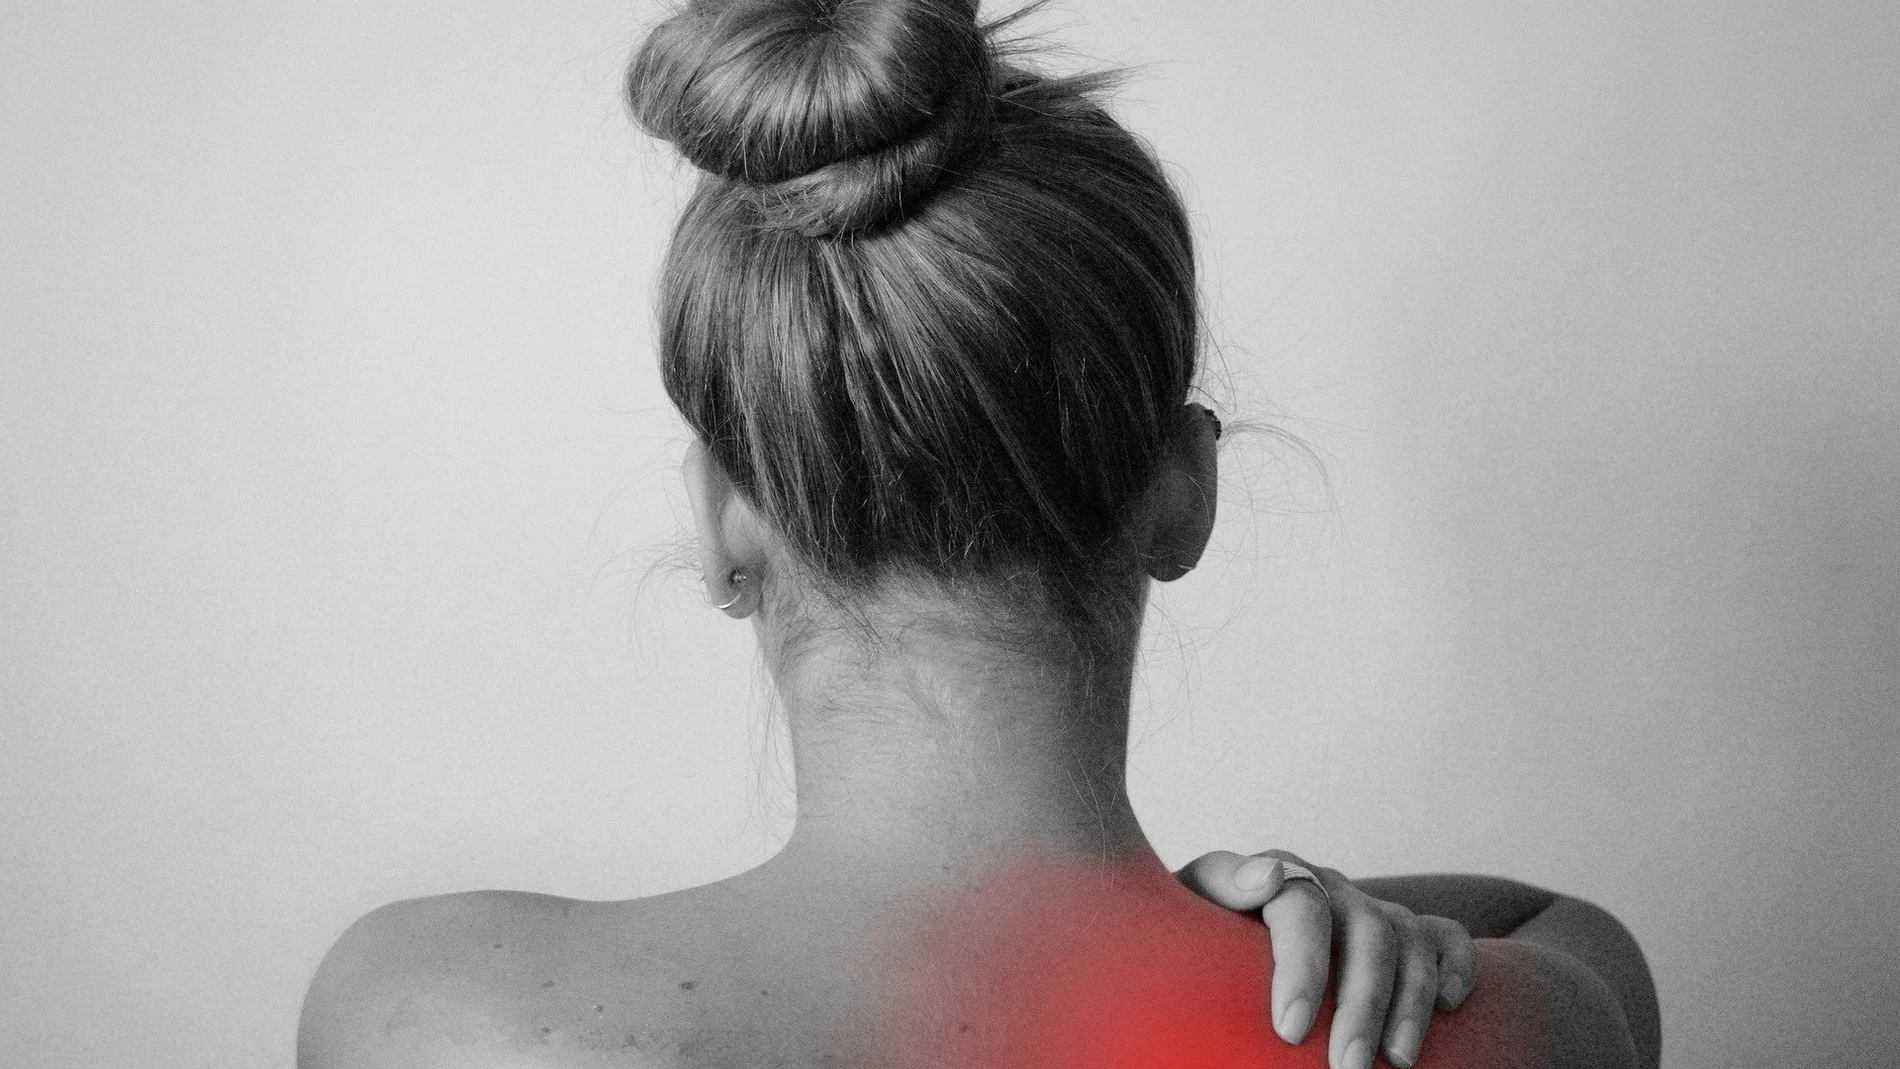 Estos son los ejercicios más adecuados para cuidar tu espalda (y prevenir el dolor)